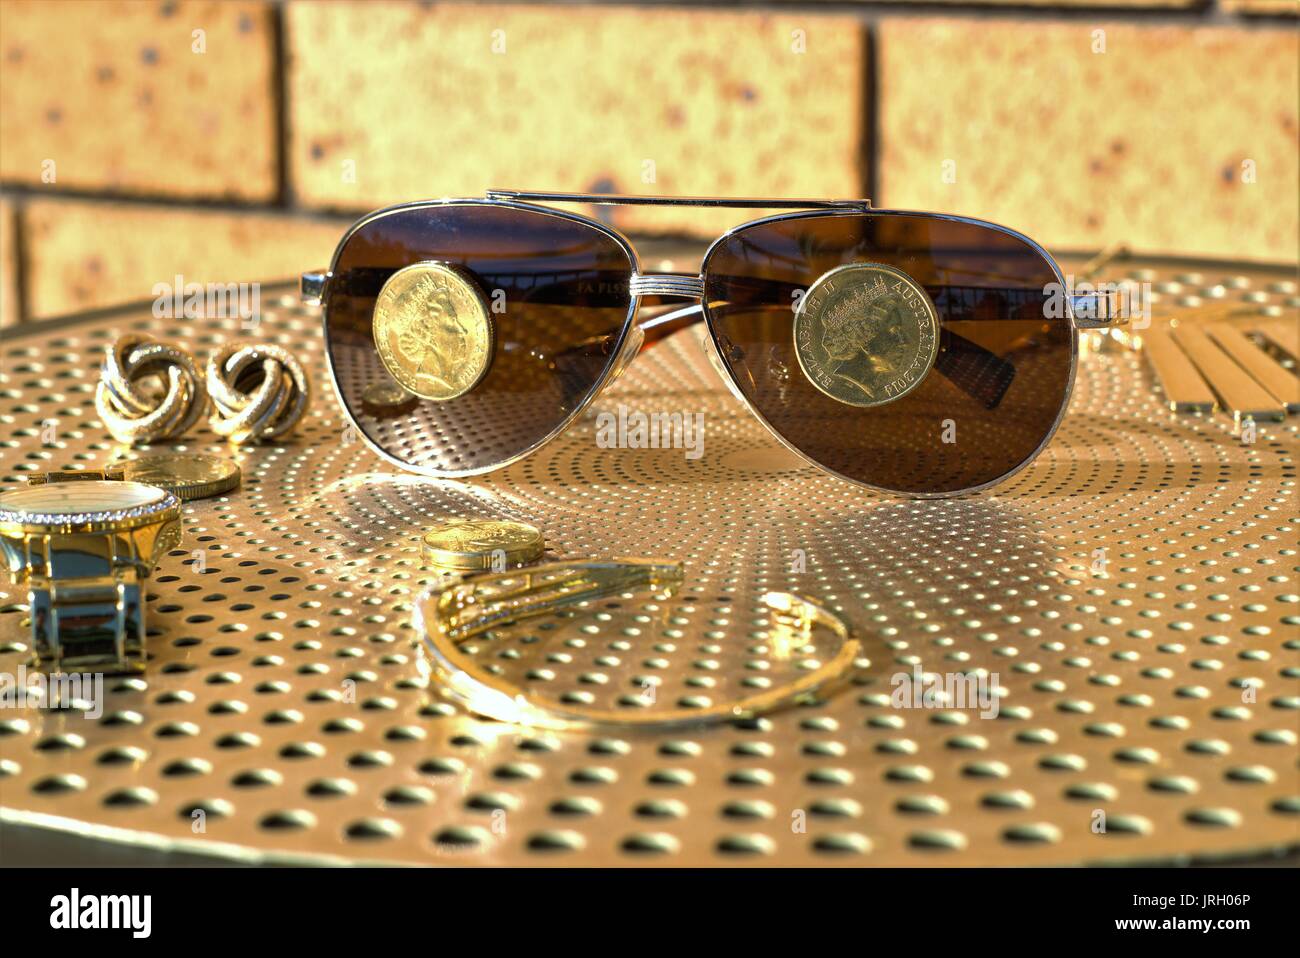 Australische Münzen auf eine Sonnenbrille. Australische 1 Dollar Münzen auf Sonnenbrillen, Gold Diamond Watch und anderen Gold Schmuck auf Tisch Stockfoto